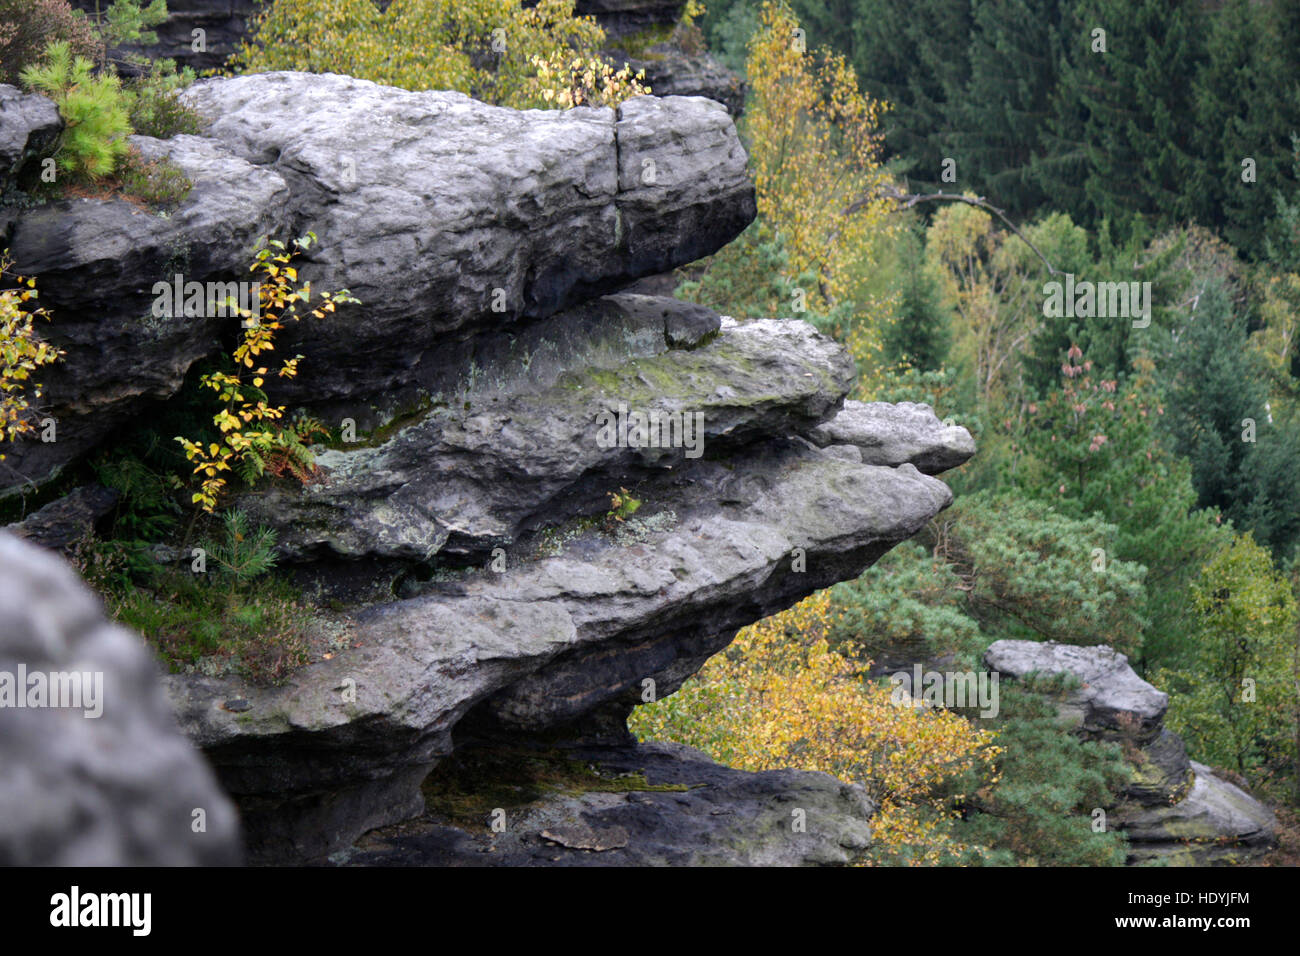 Impressionen: Bielatal - Saechsische Schweiz. Stock Photo